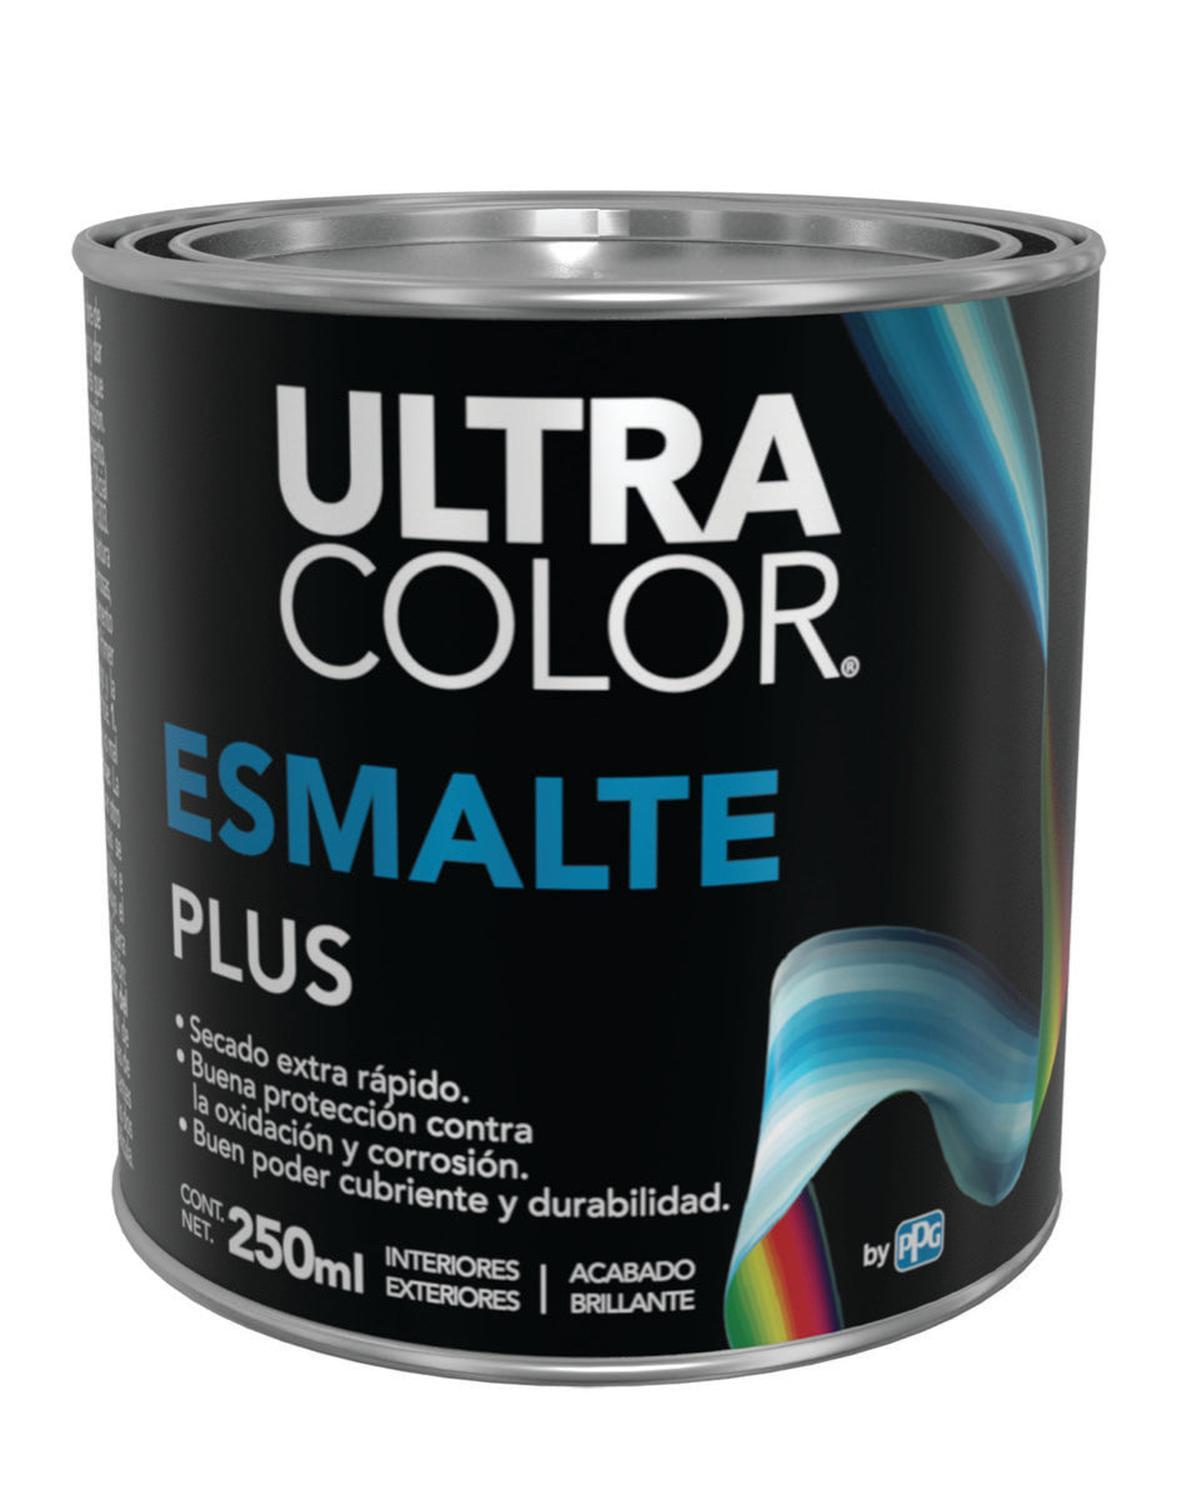 Ultracolor Esmalte Plus Blanco De 250 Ml